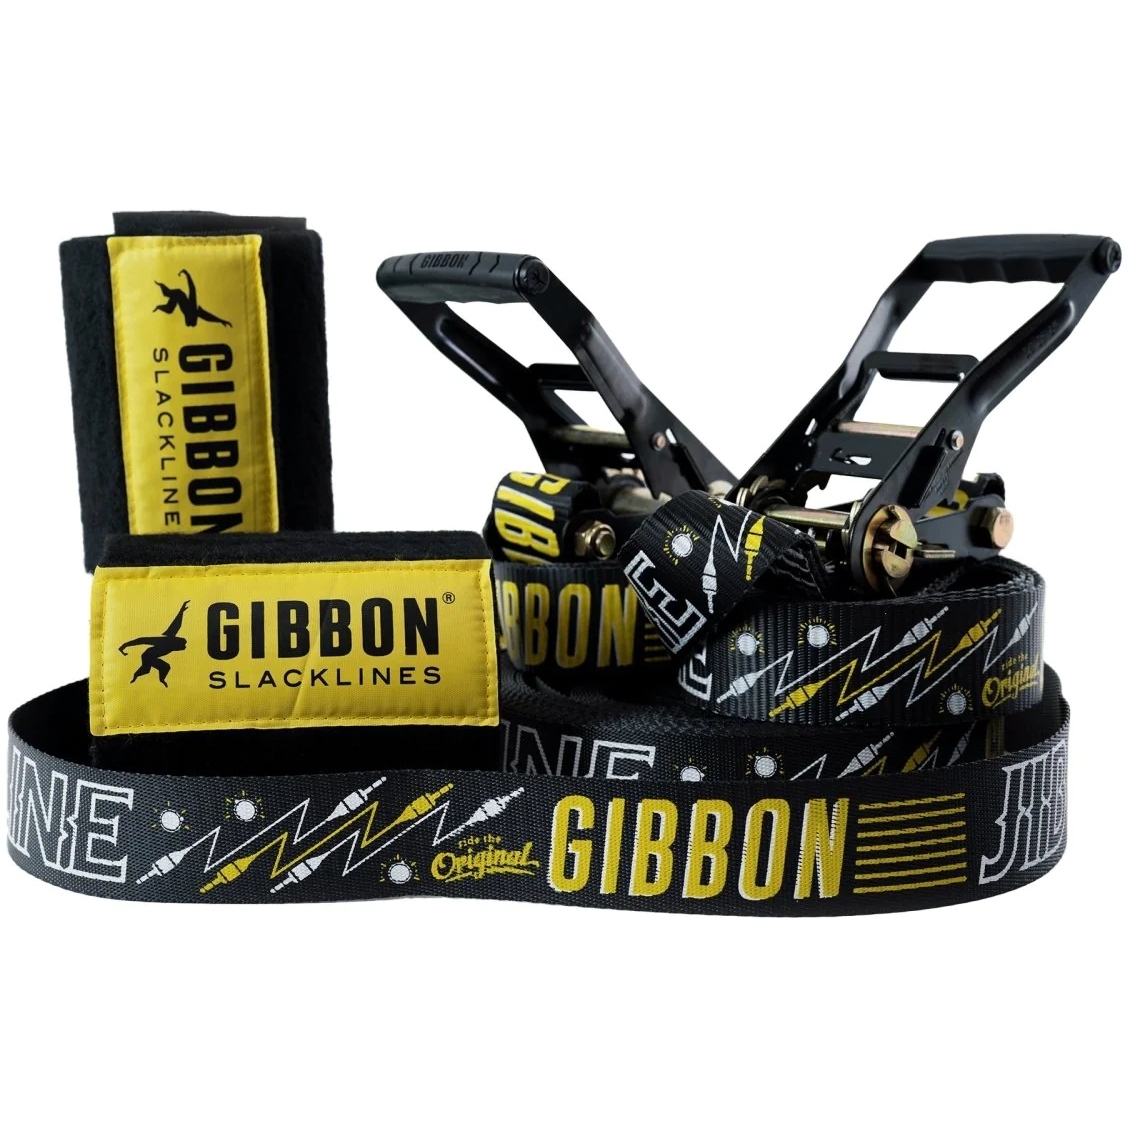 Bild von GIBBON Jibline XL Treewear - 25m Slackline Set